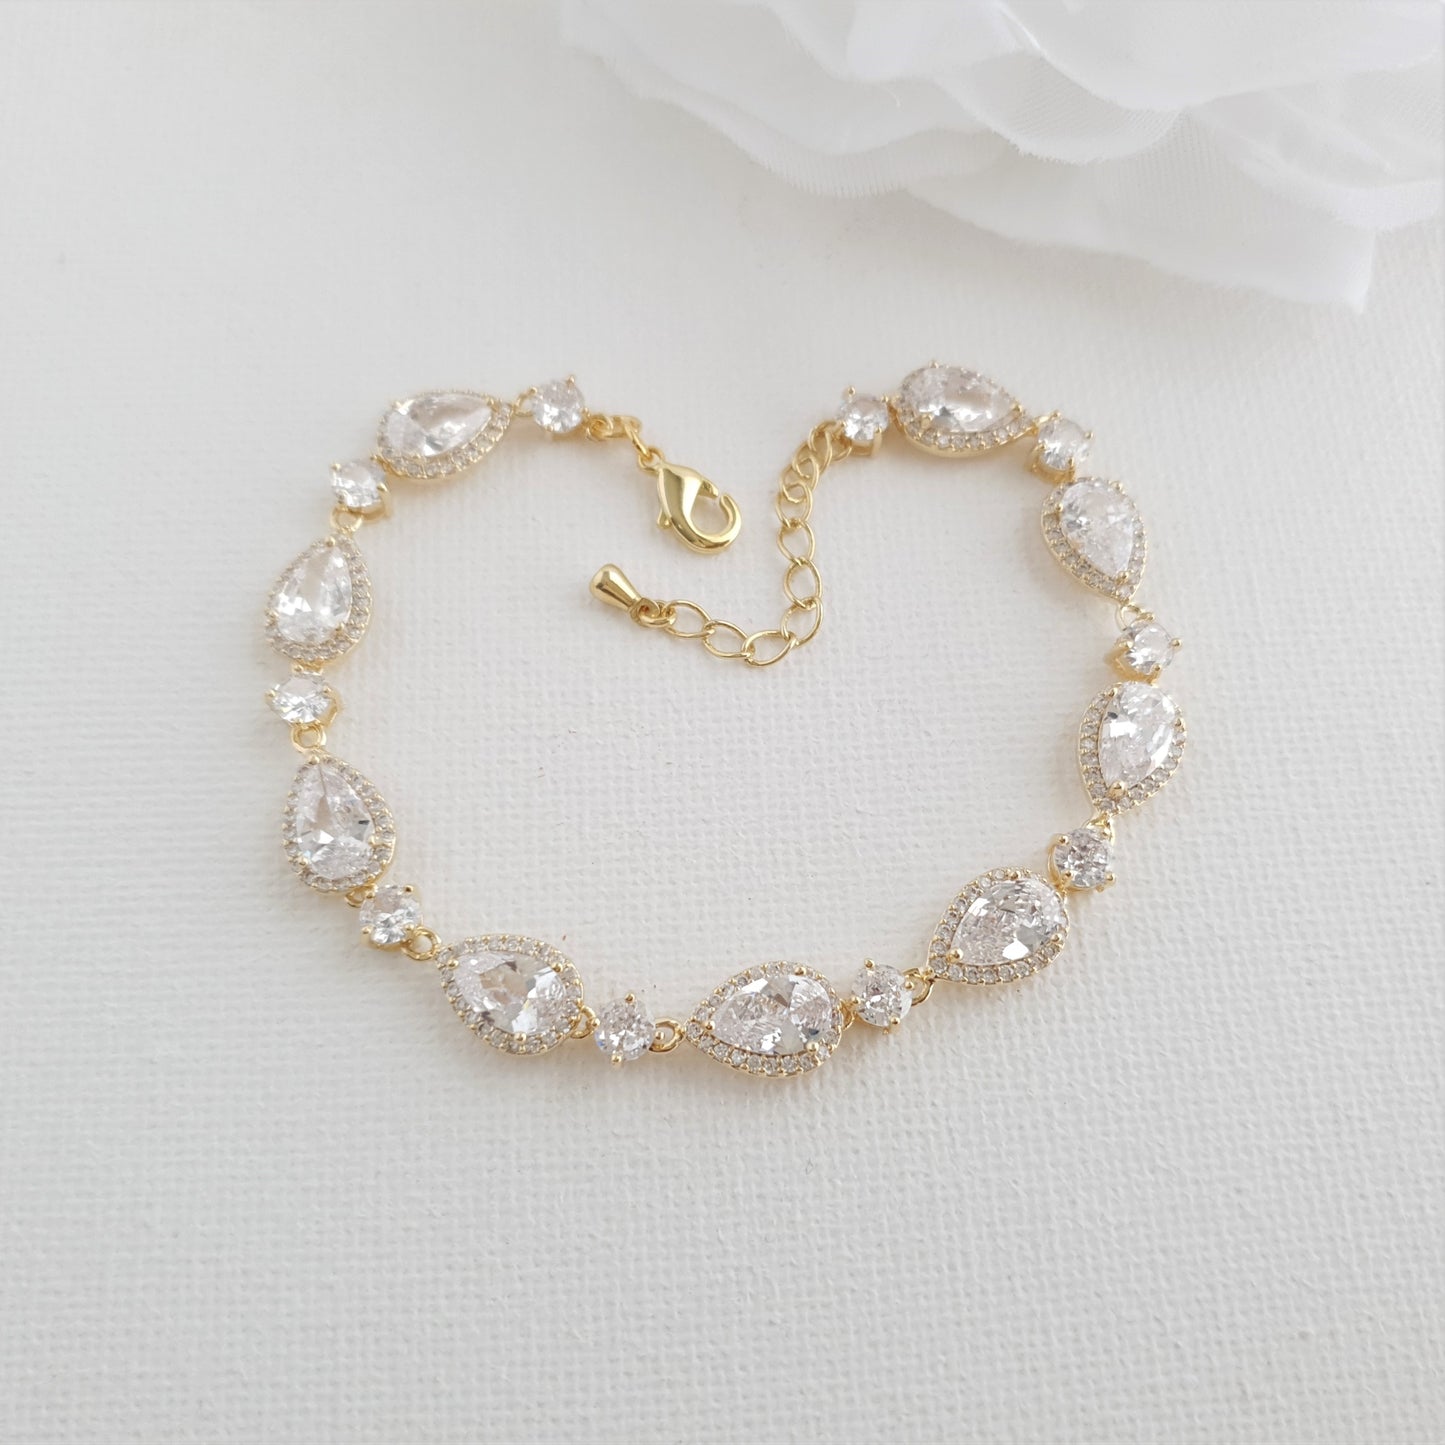 Silver Wedding Bracelet with Teardrops-Luna